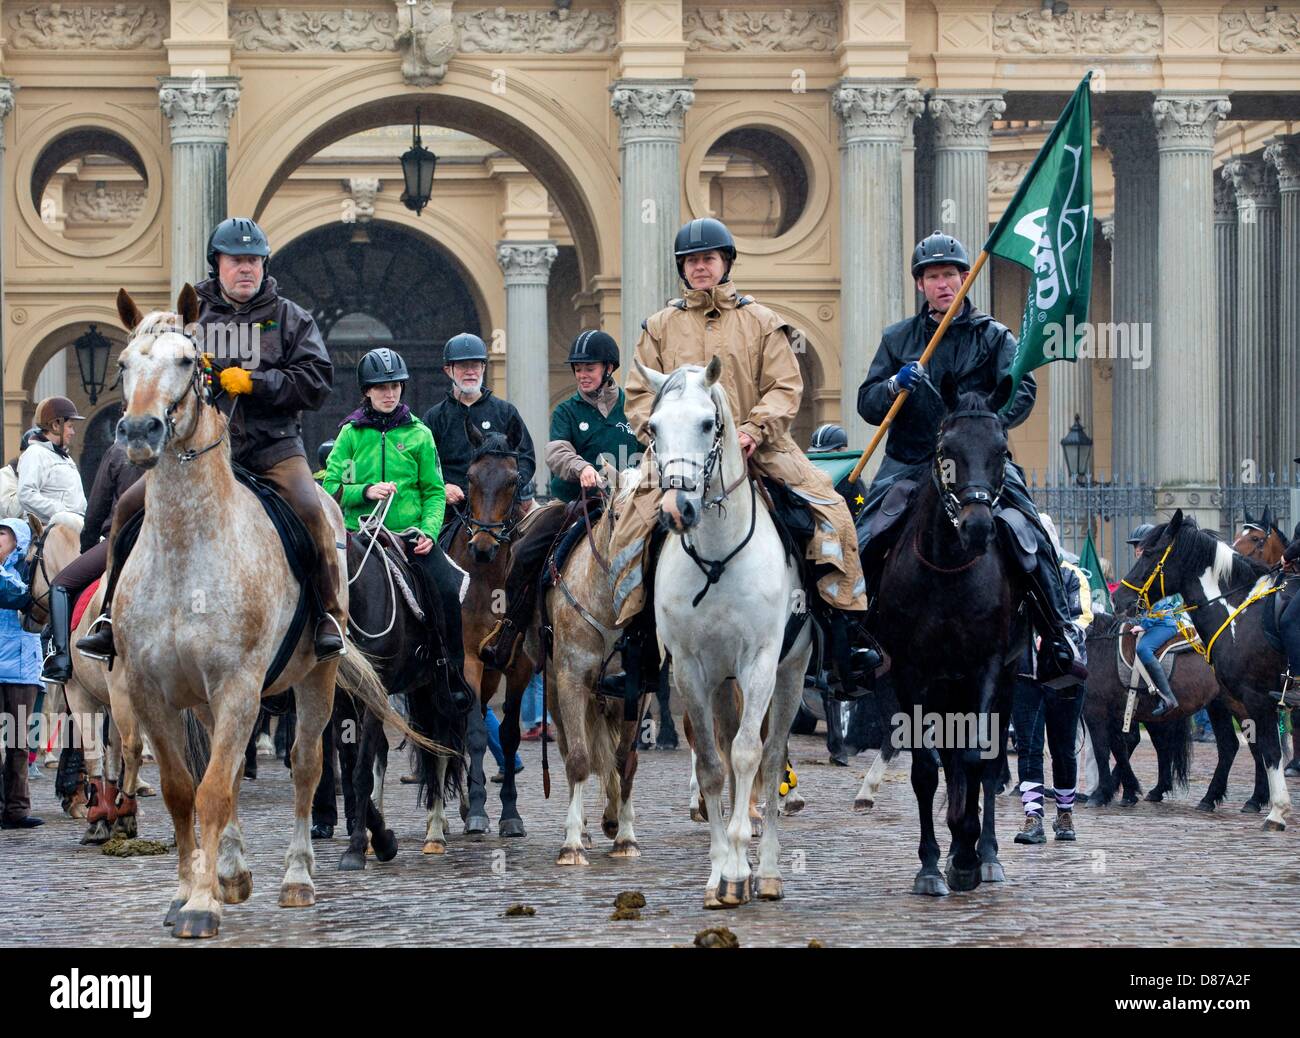 Les membres de l'Association allemande des cavaliers de loisirs (VFD) ride devant le château de Schwerin de Schwerin, Allemagne, 21 mai 2013. L'occasion était le 4oth anniversaire de la VD. Photo : JENS BUETTNER Banque D'Images